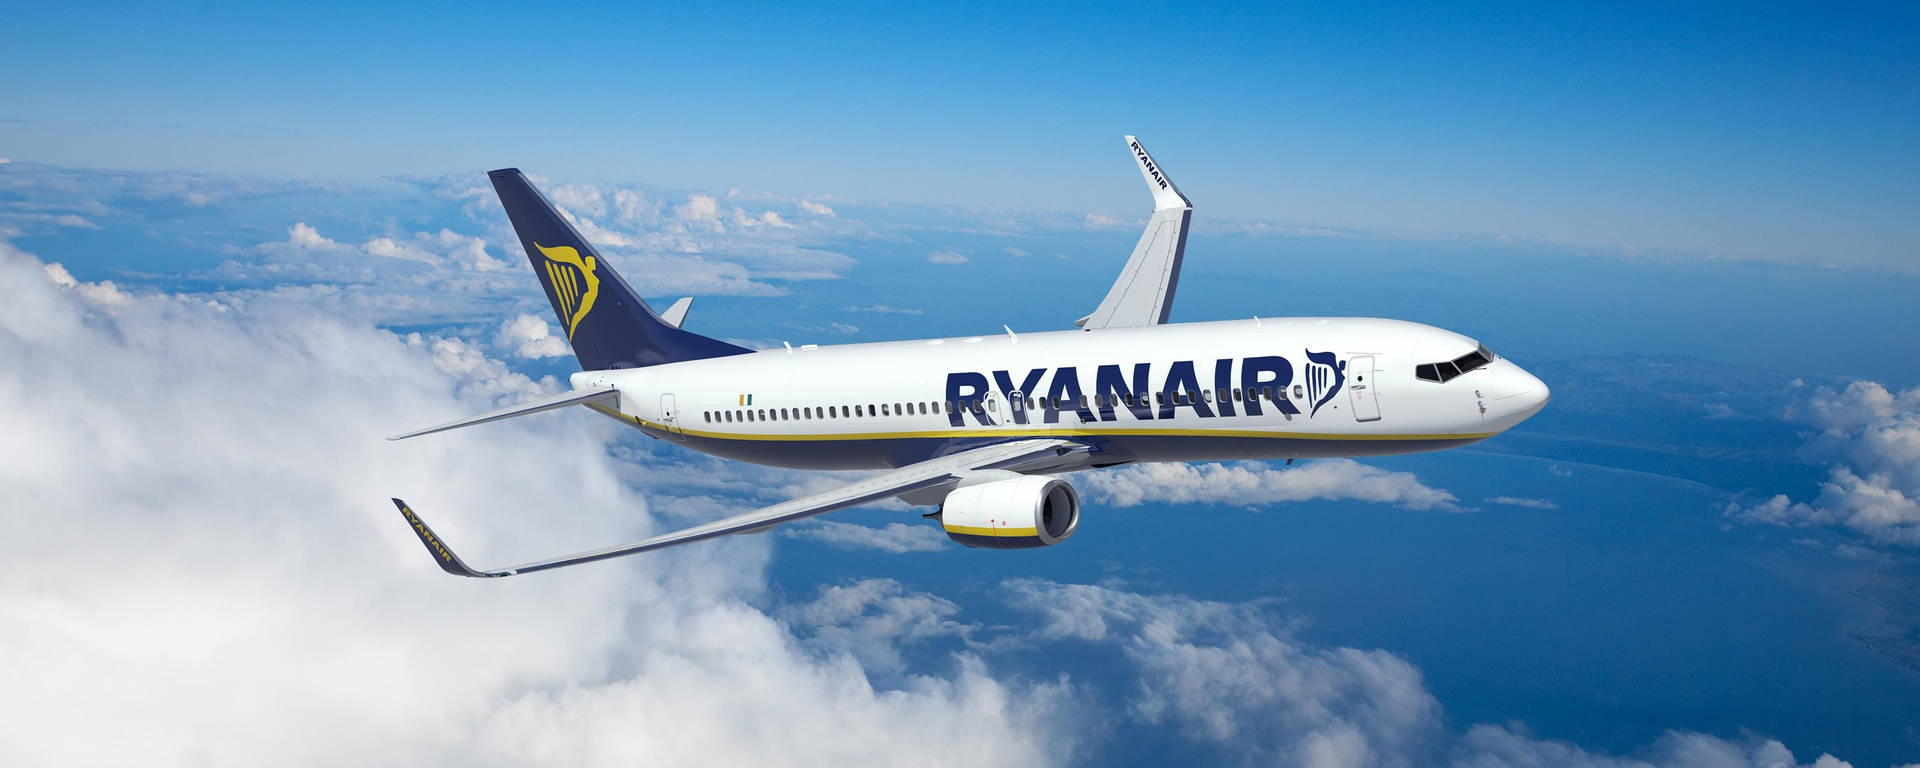 Ryanair Airplane In Sky Wallpaper